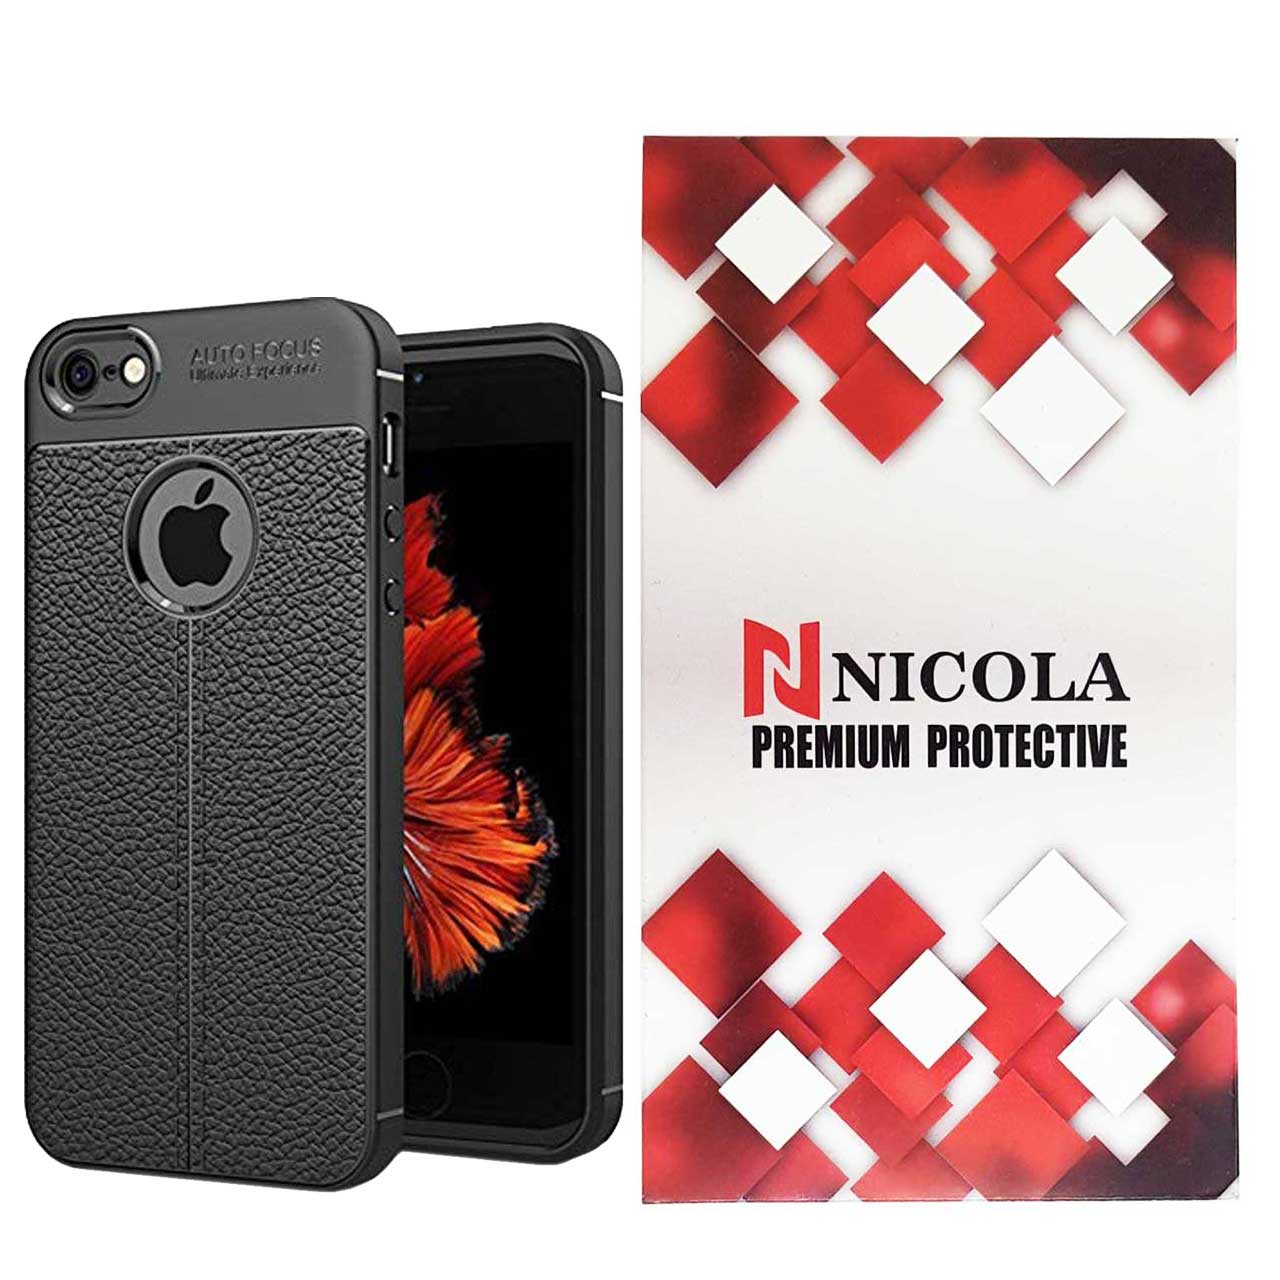 کاور نیکلا مدل N_ATO مناسب برای گوشی موبایل اپل Iphone 5/5s/SE